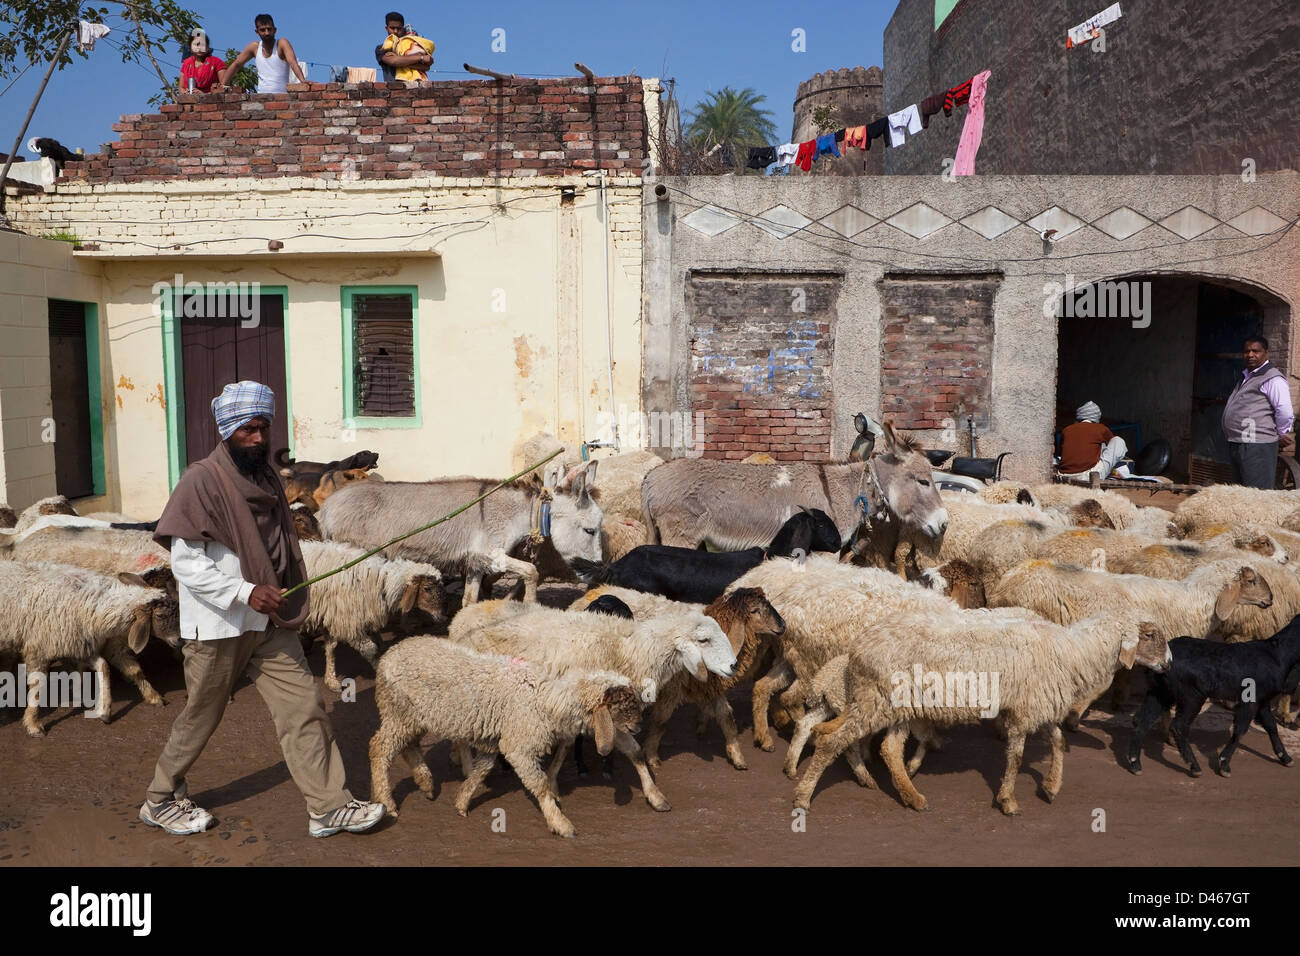 Un agriculteur conduisant un troupeau de moutons et des ânes à travers la rue du village, comme regarder les gens sur les toits. Banque D'Images